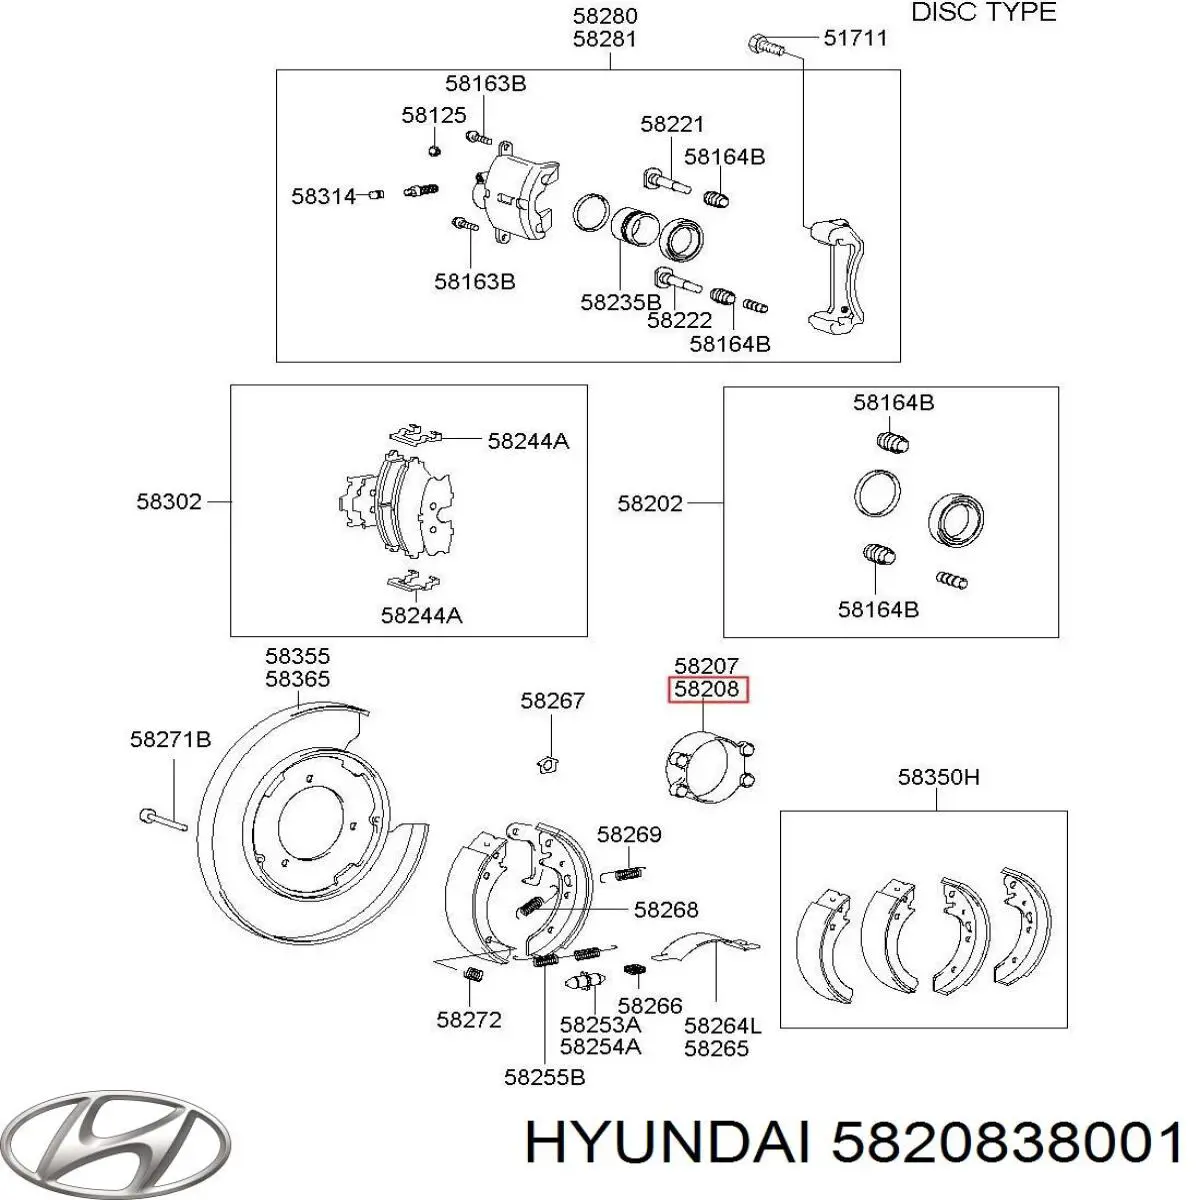 5820838001 Hyundai/Kia